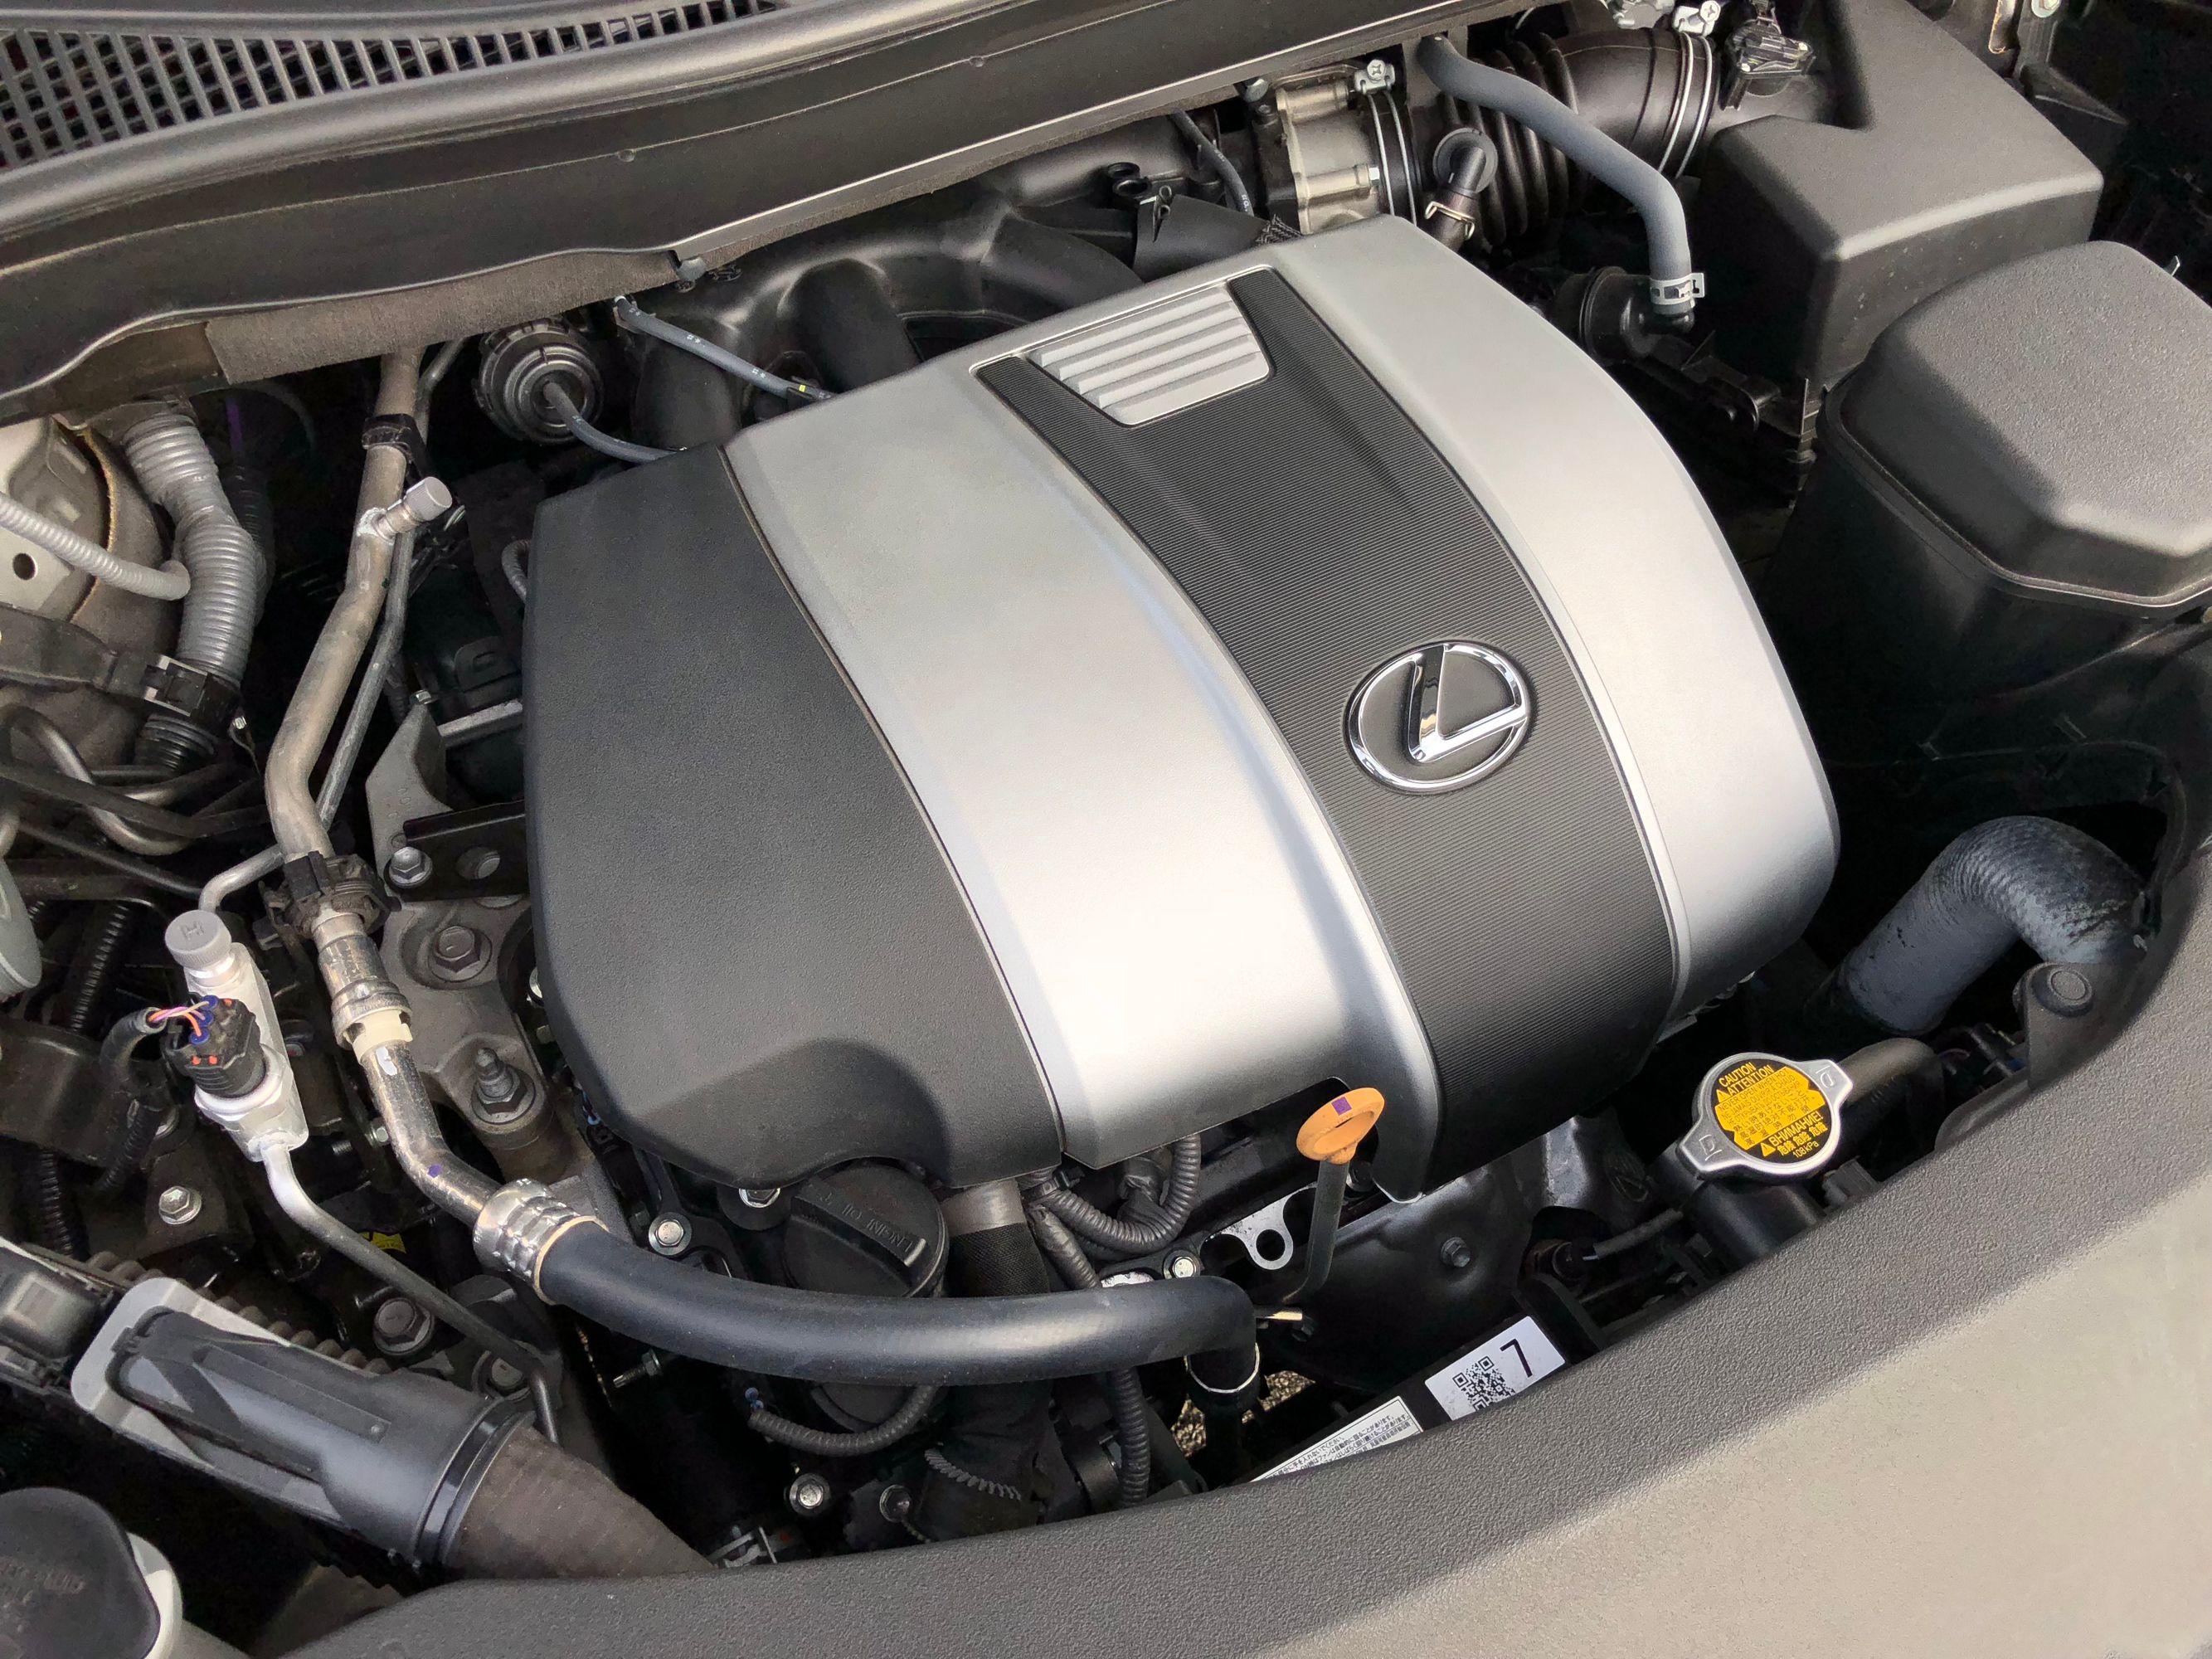 2018 Lexus RX350 - Driven 